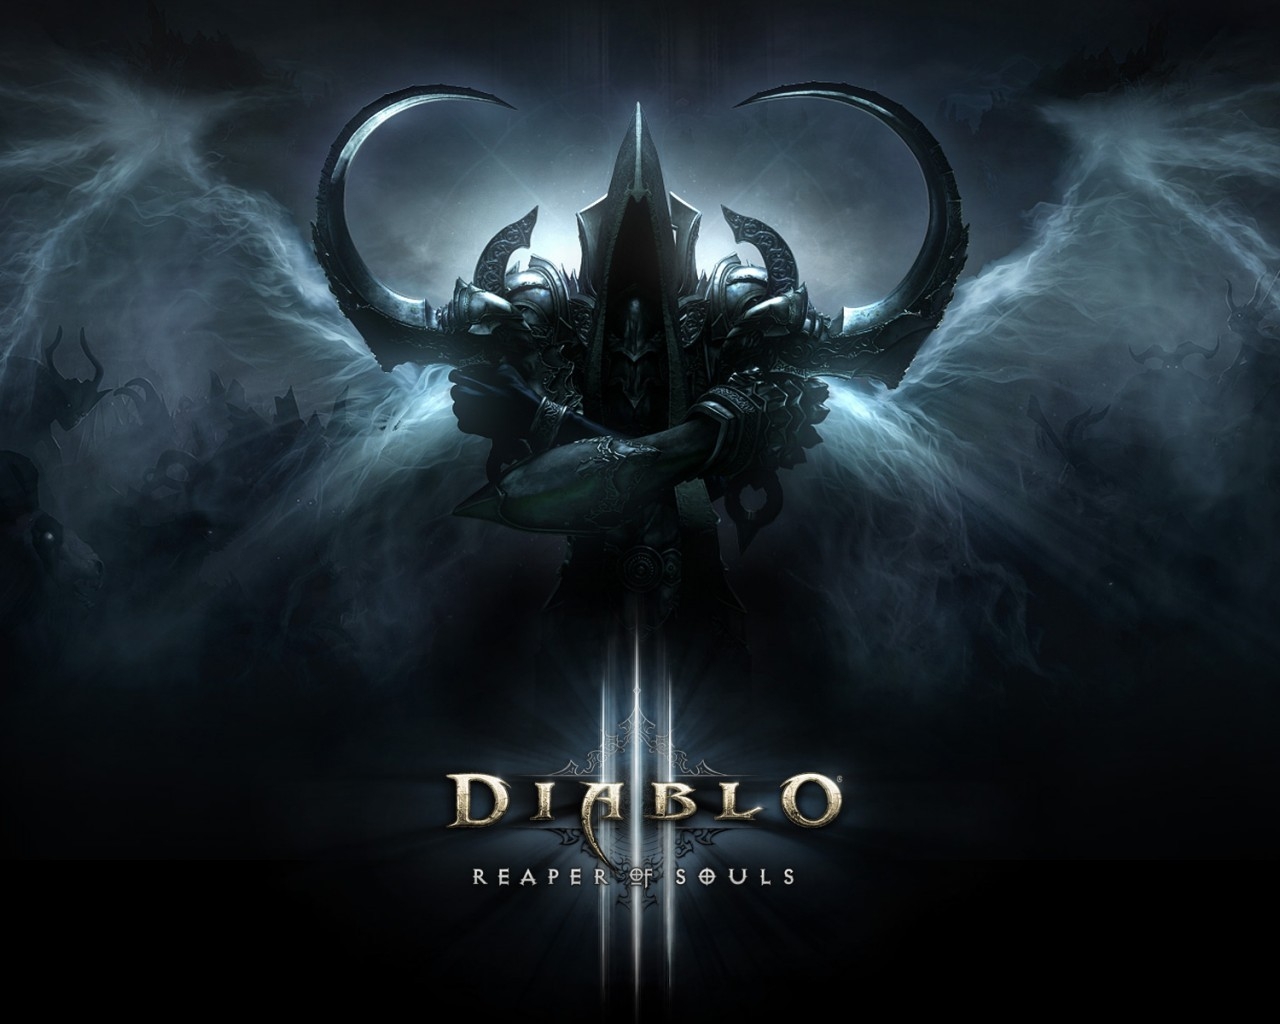 Reaper of Souls Diablo III for 1280 x 1024 resolution